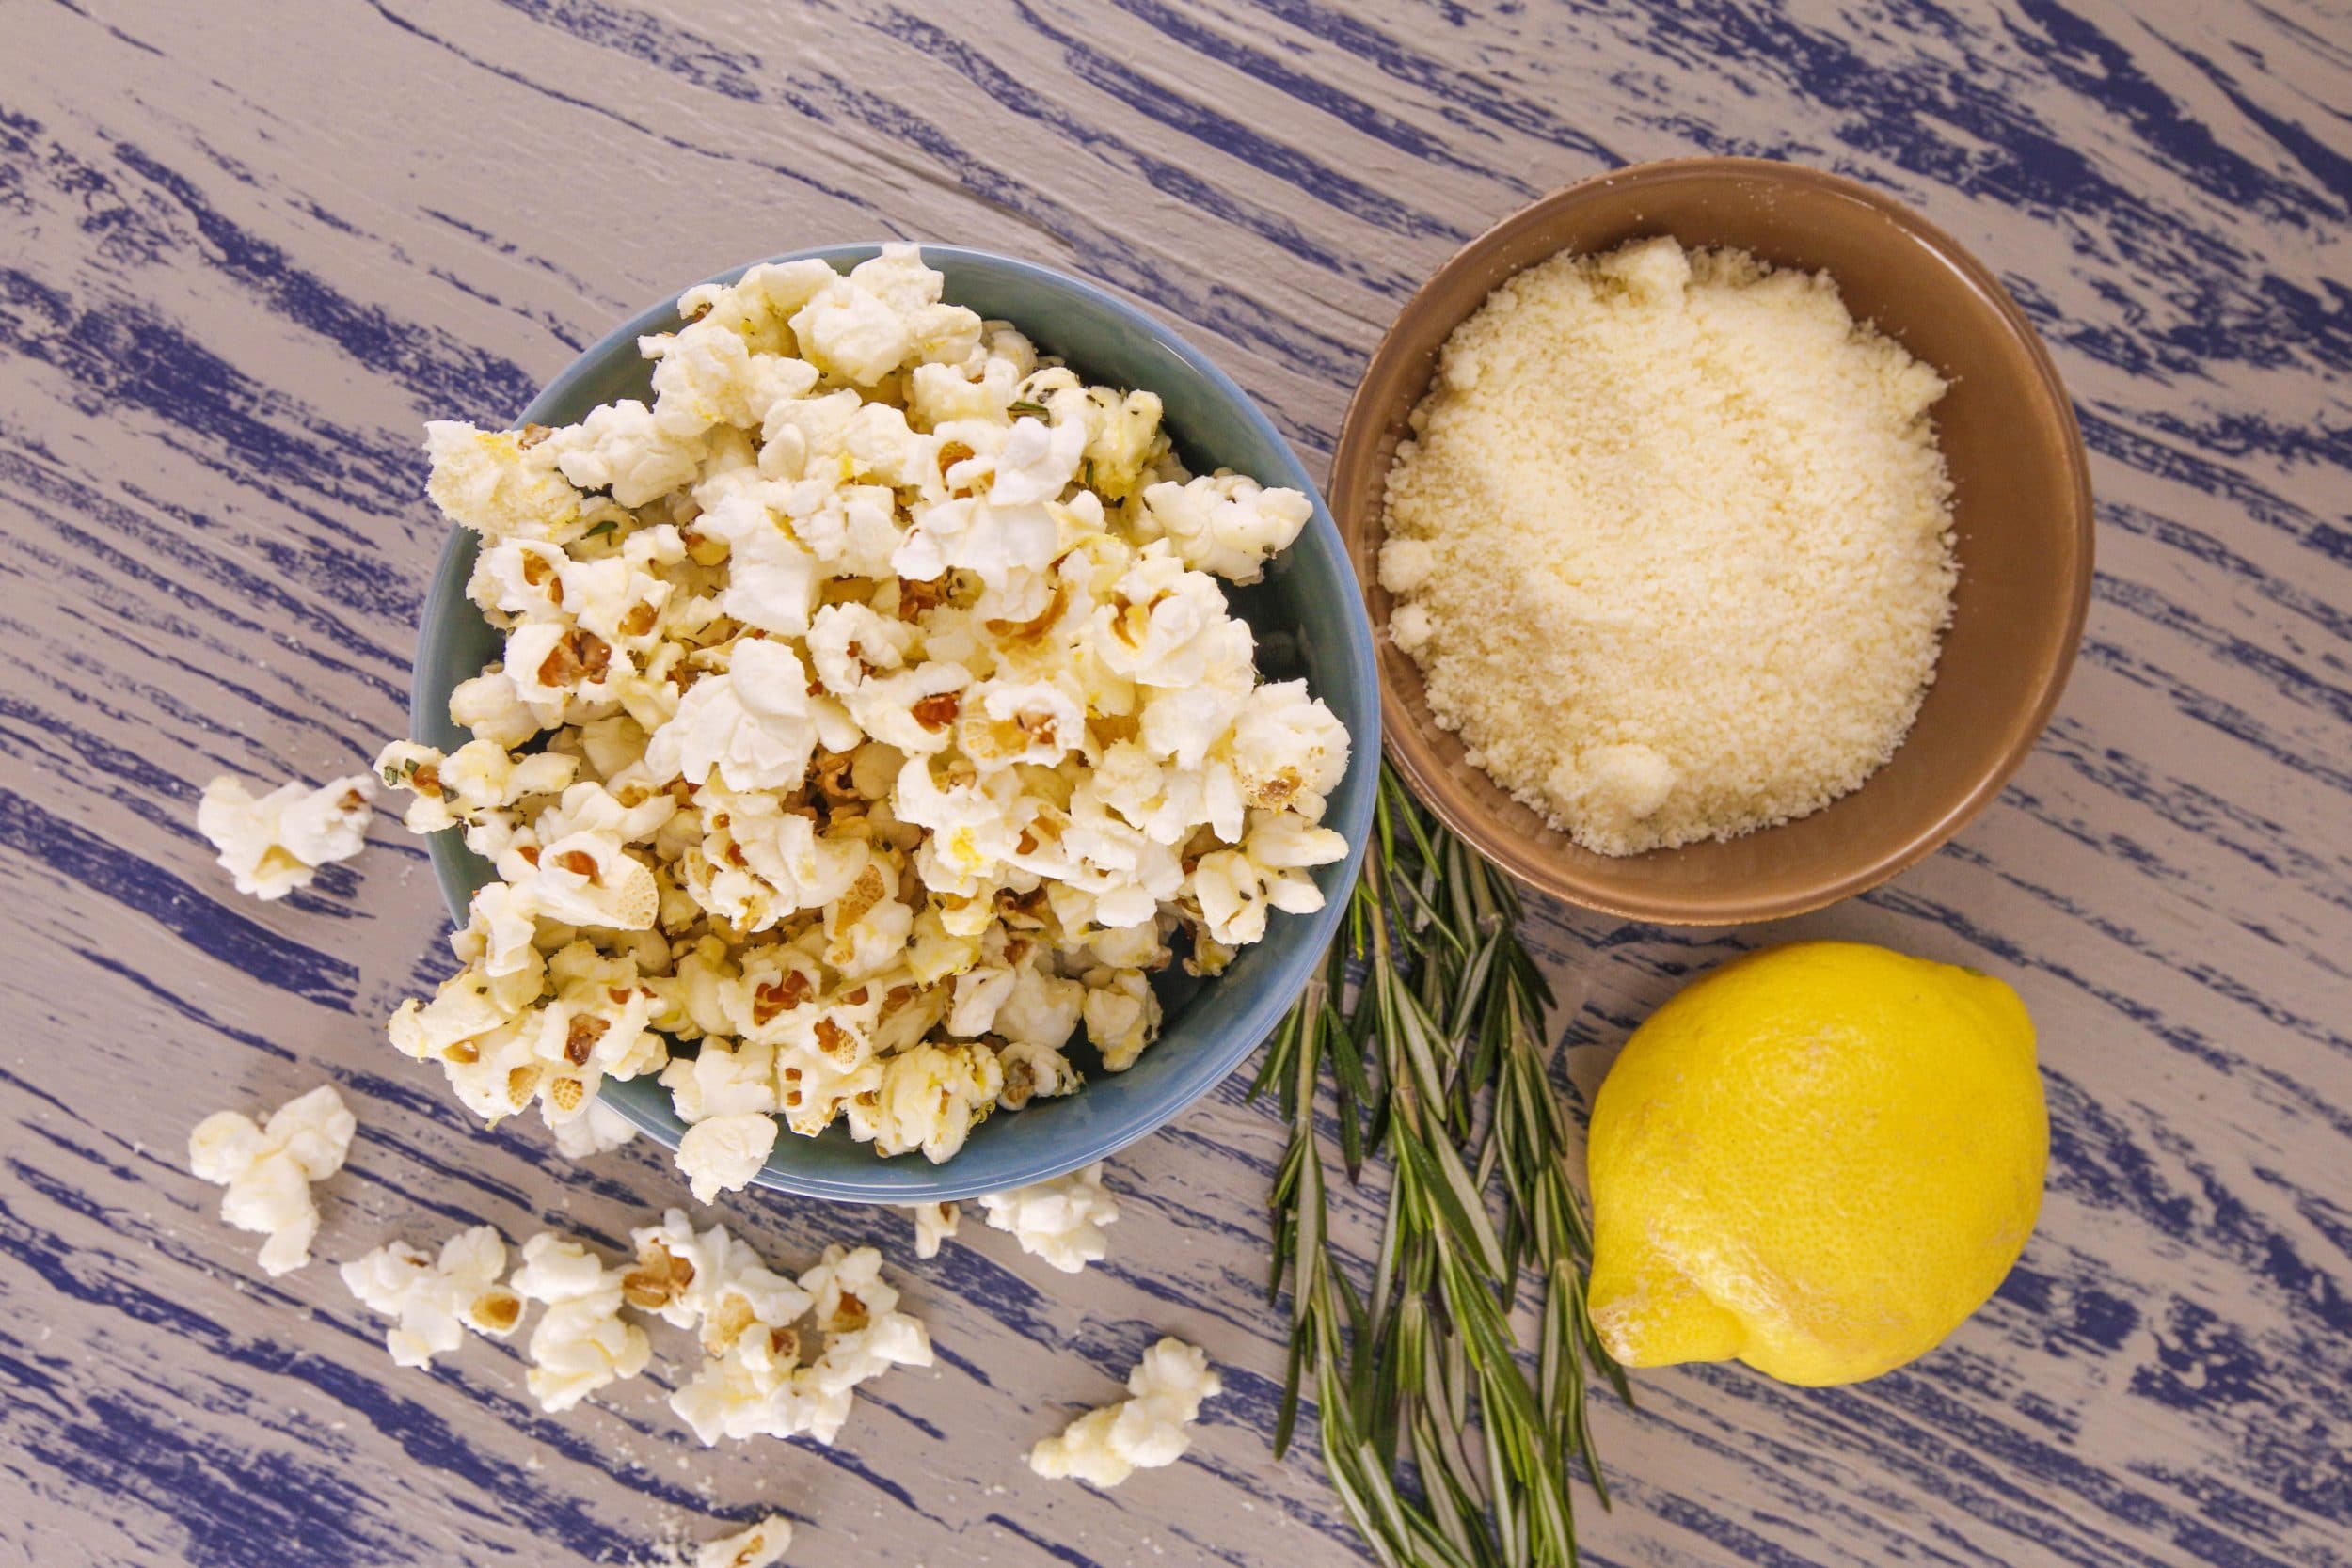 Rosemary-Parm Popcorn